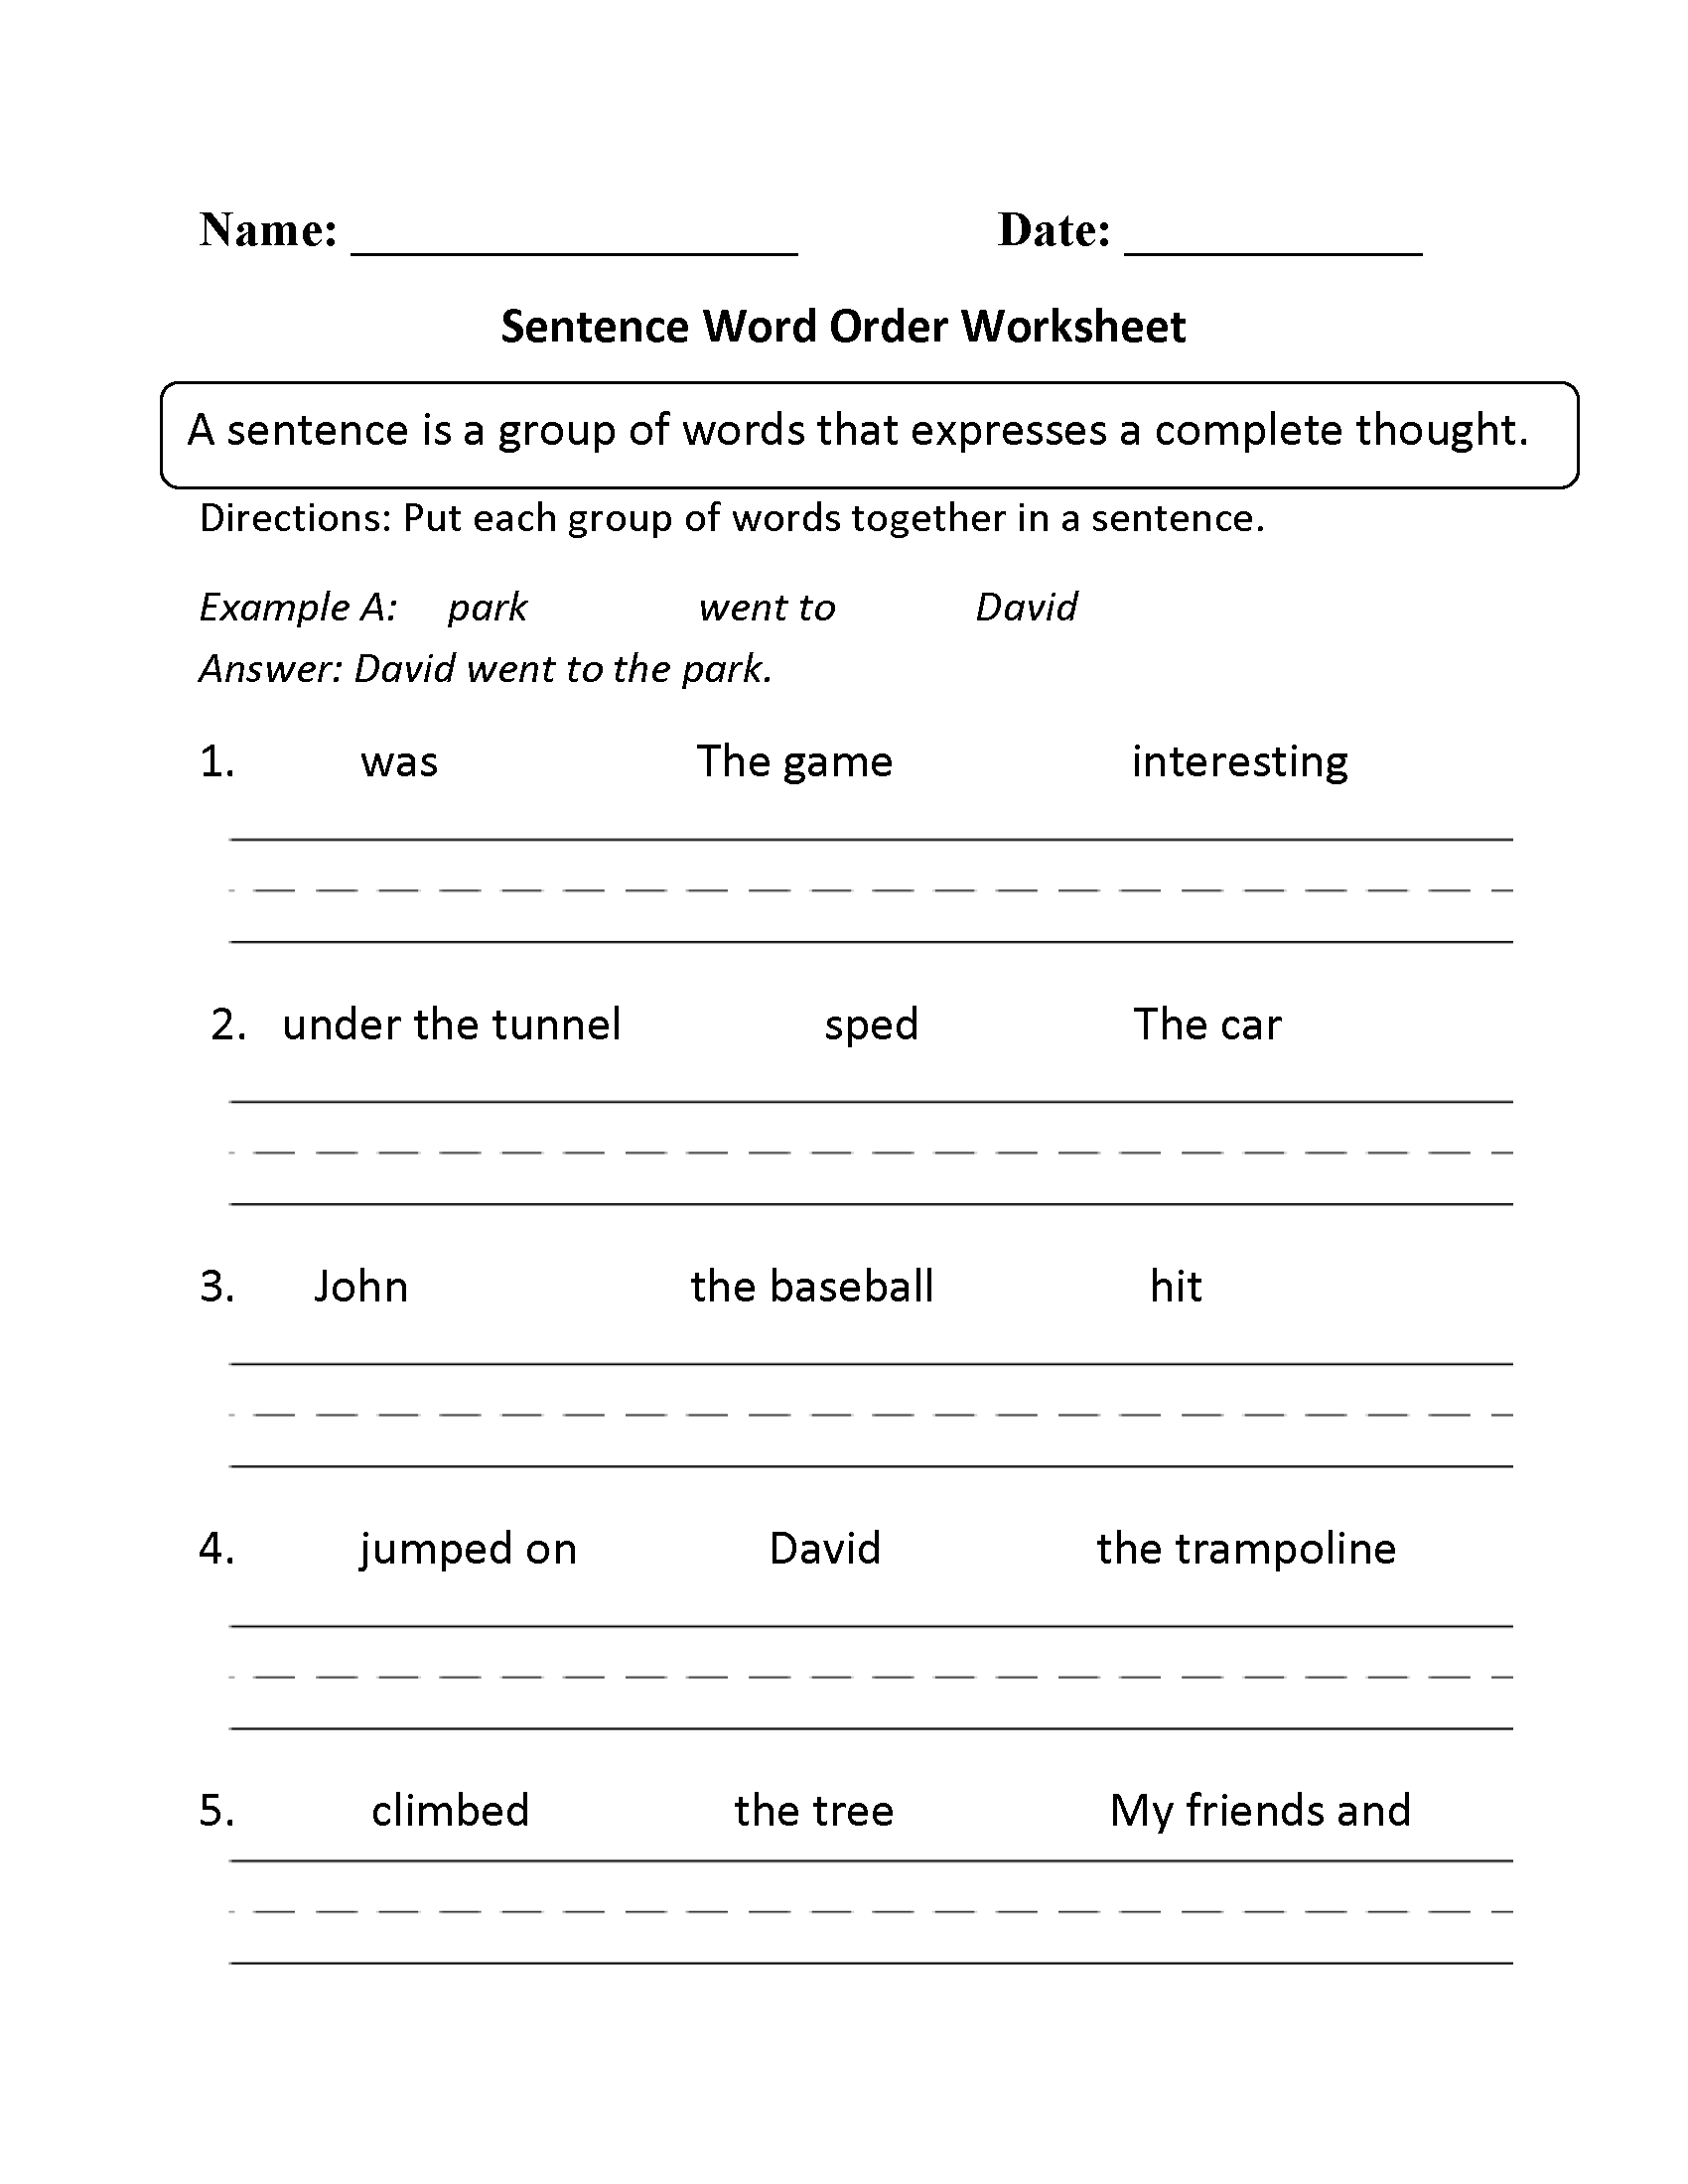 Sentence Word Order Worksheets Image